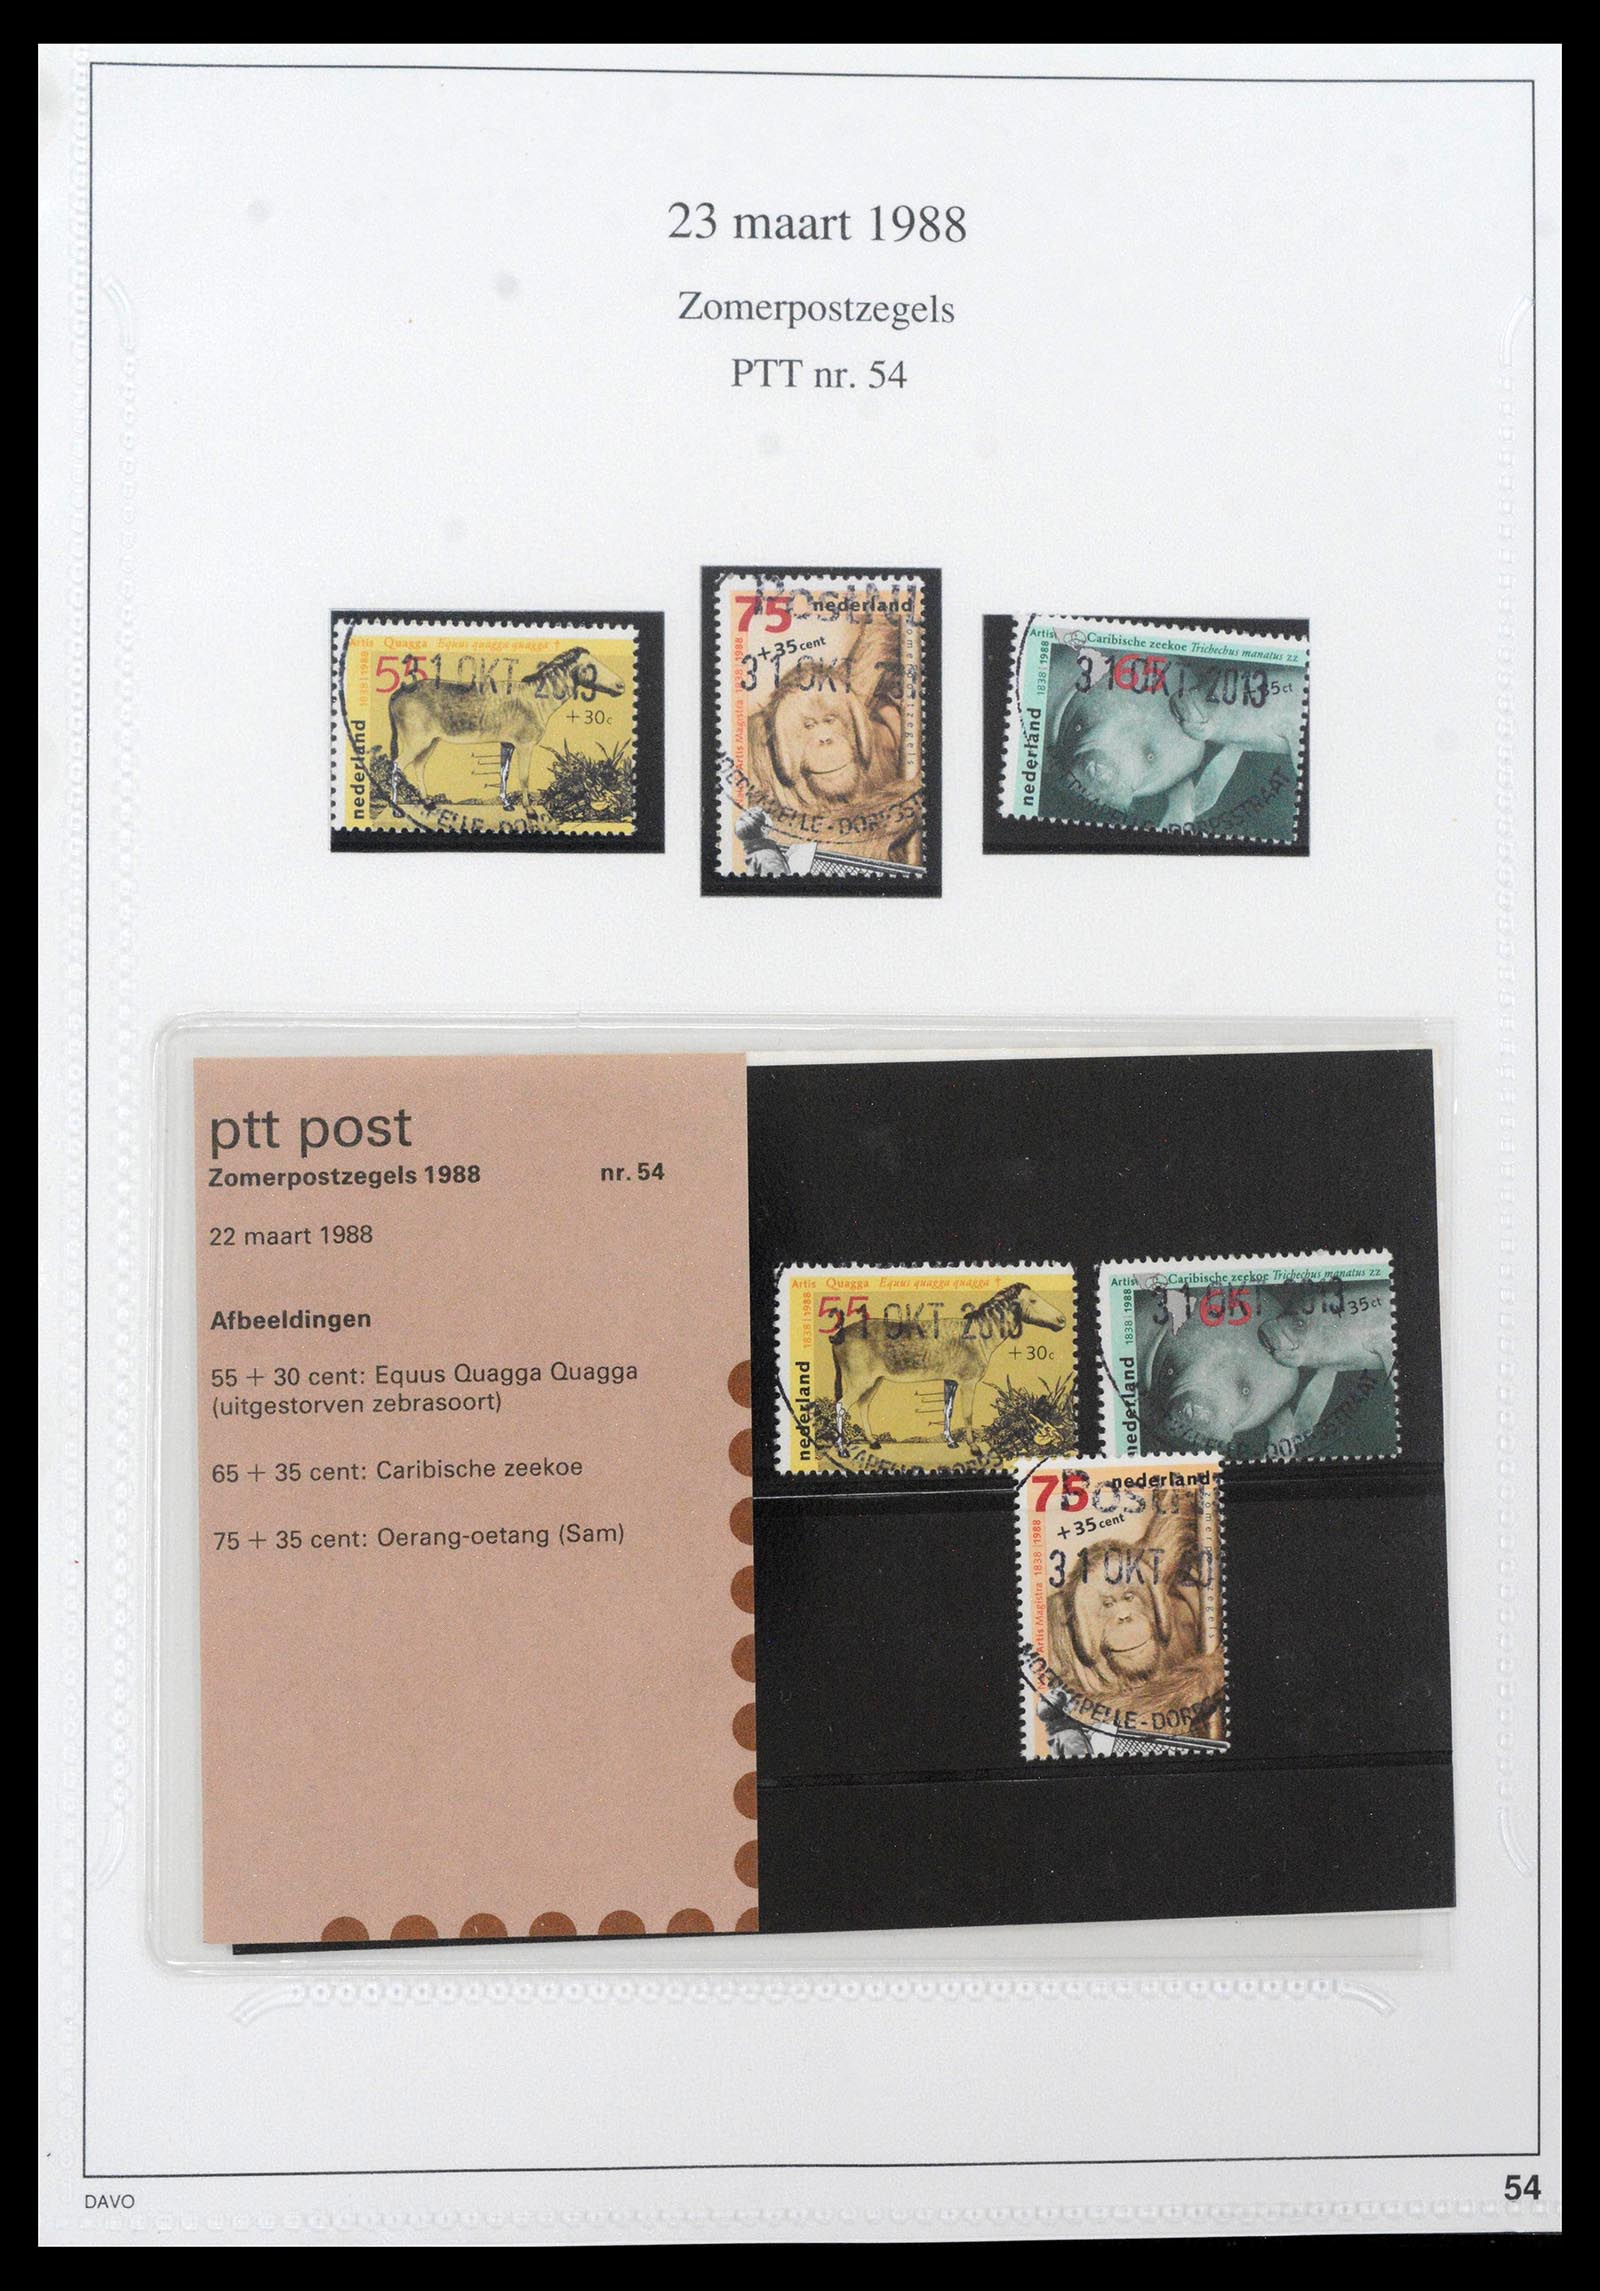 39121 0054 - Stamp collection 39121 Netherlands presentationpacks 1982-2001.